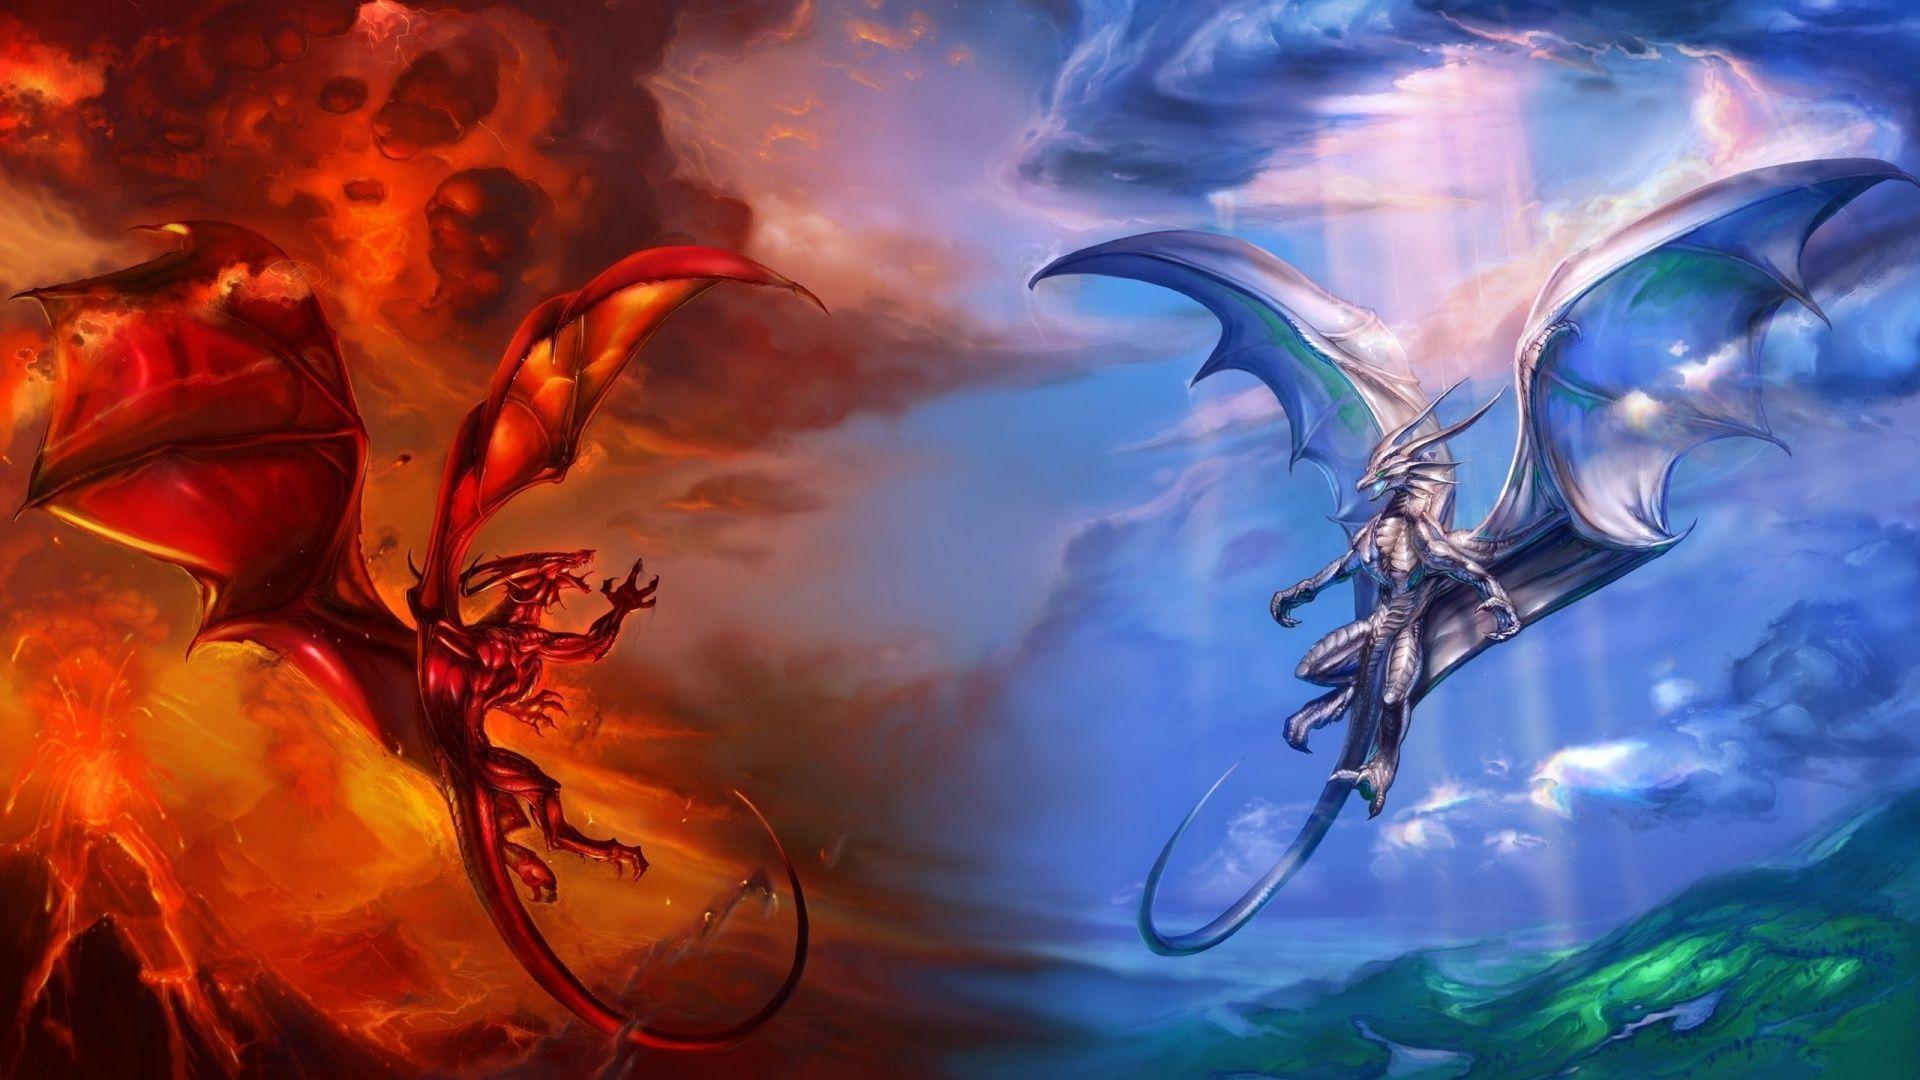 Burning Mountain Dragons Wallpaper, Dragon wallpaper